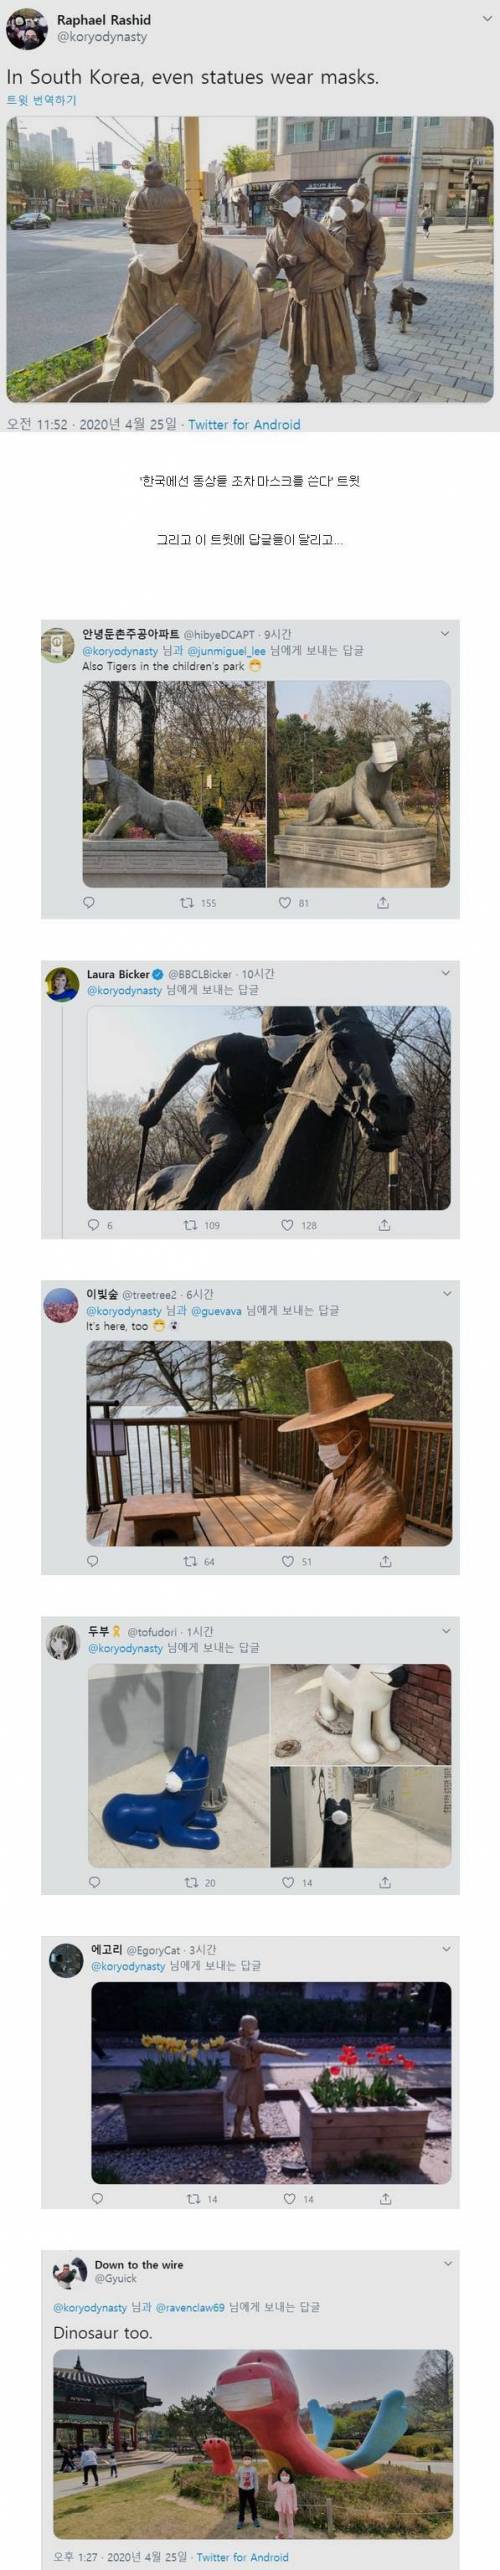 한국은 동상들 조차도 마스크를 한다 ~.jpg